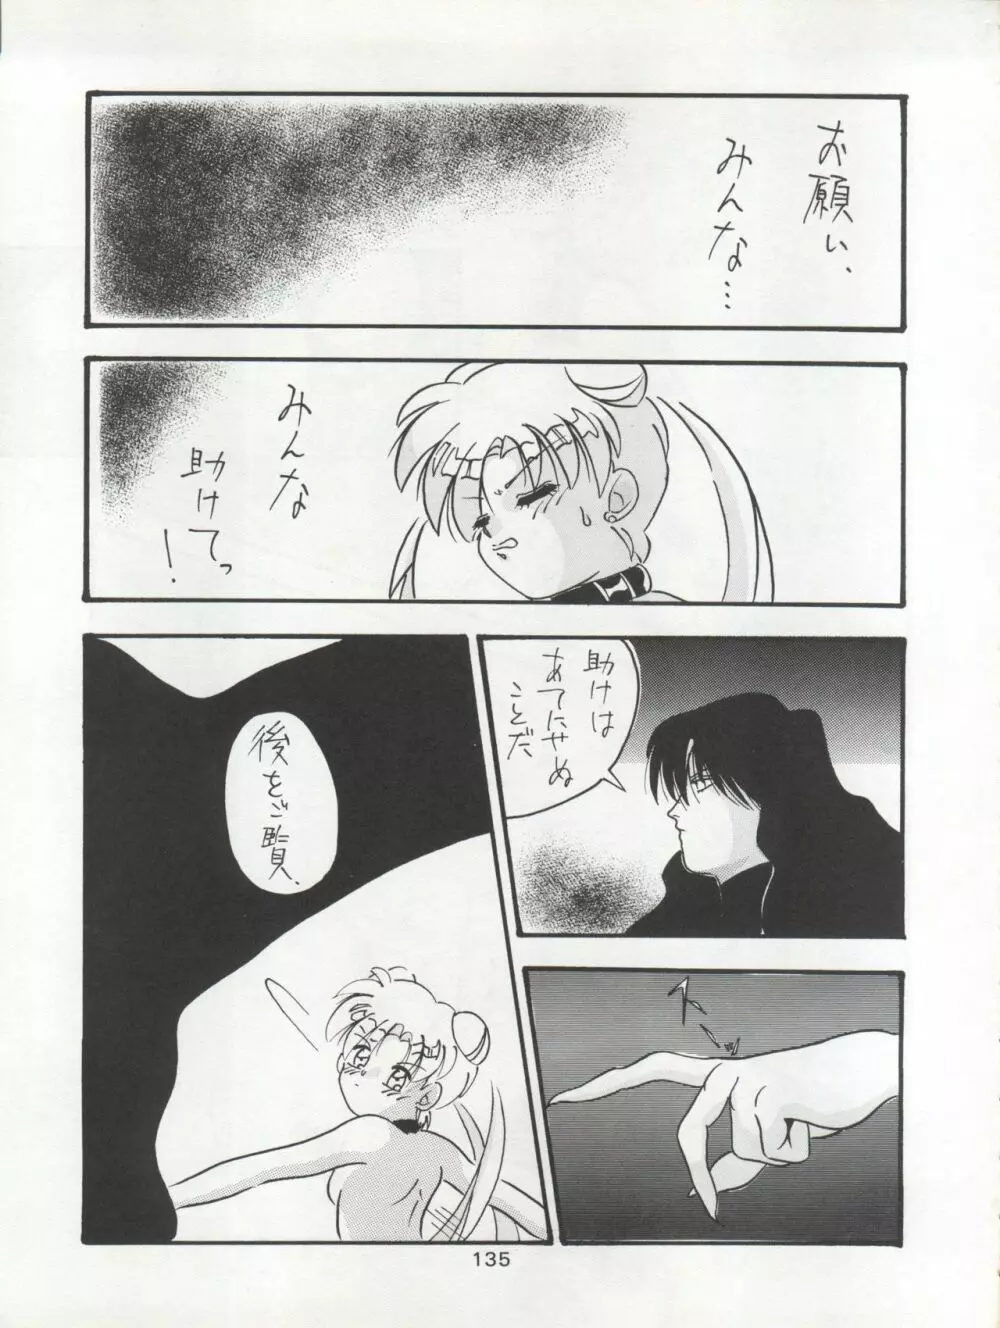 KATZE 7 上巻 - page136